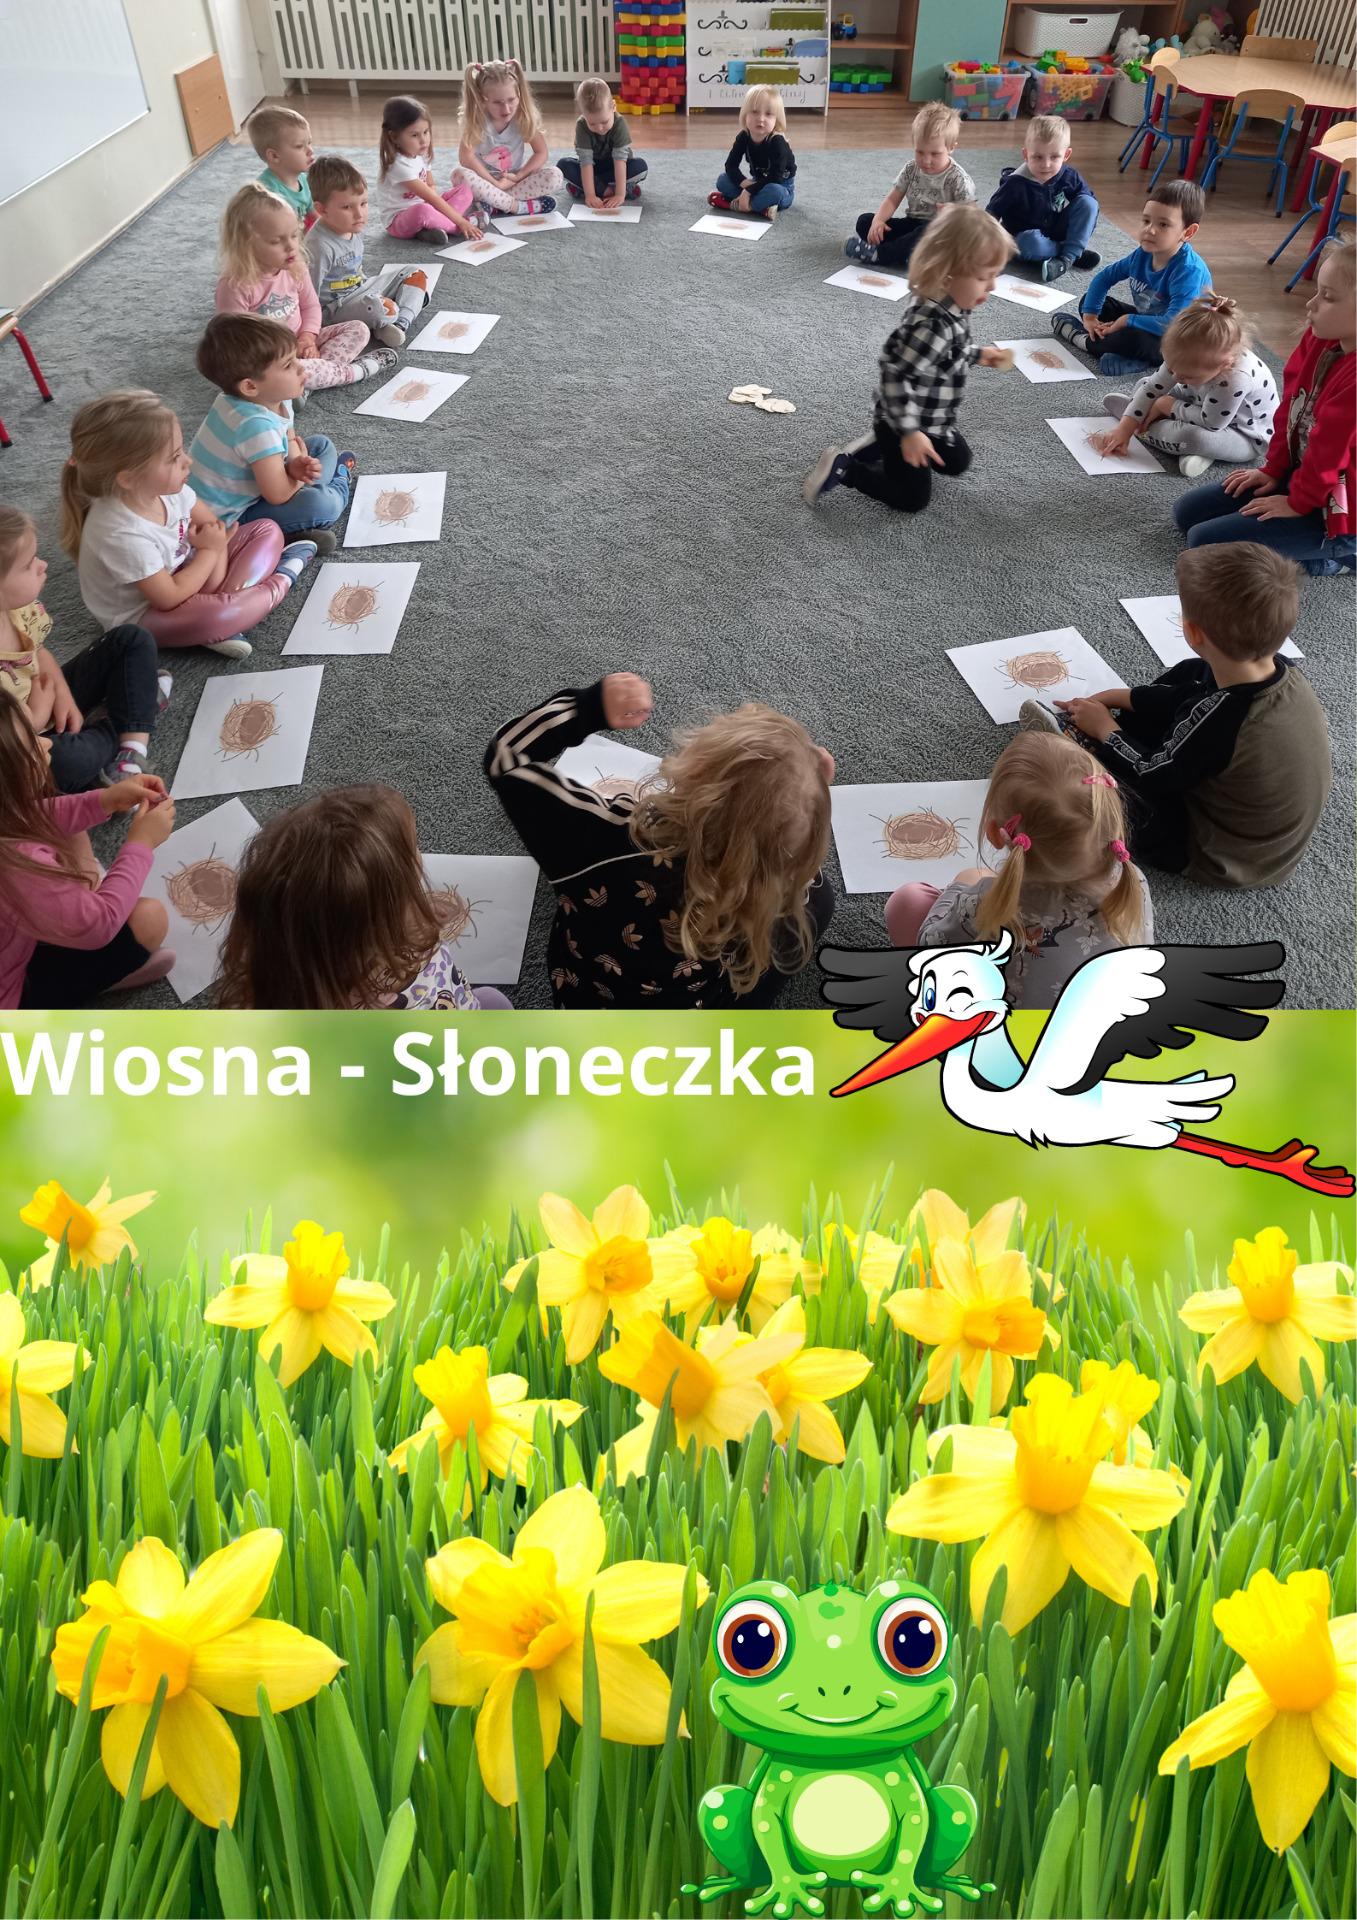 Wiosna - Słoneczka - Obrazek 1